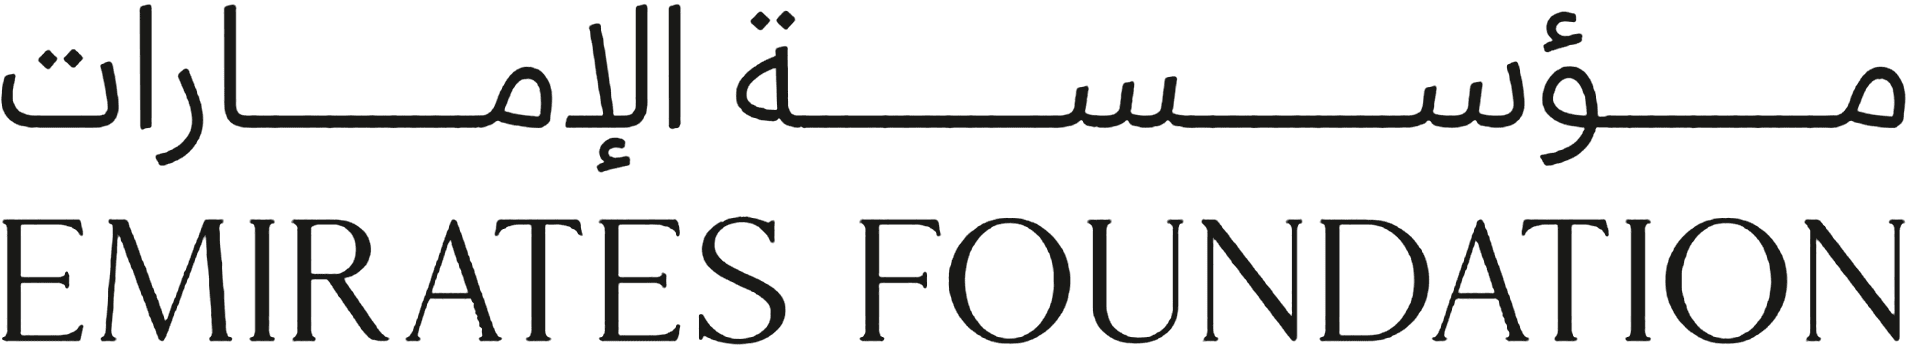 Emirates Foundation Logo